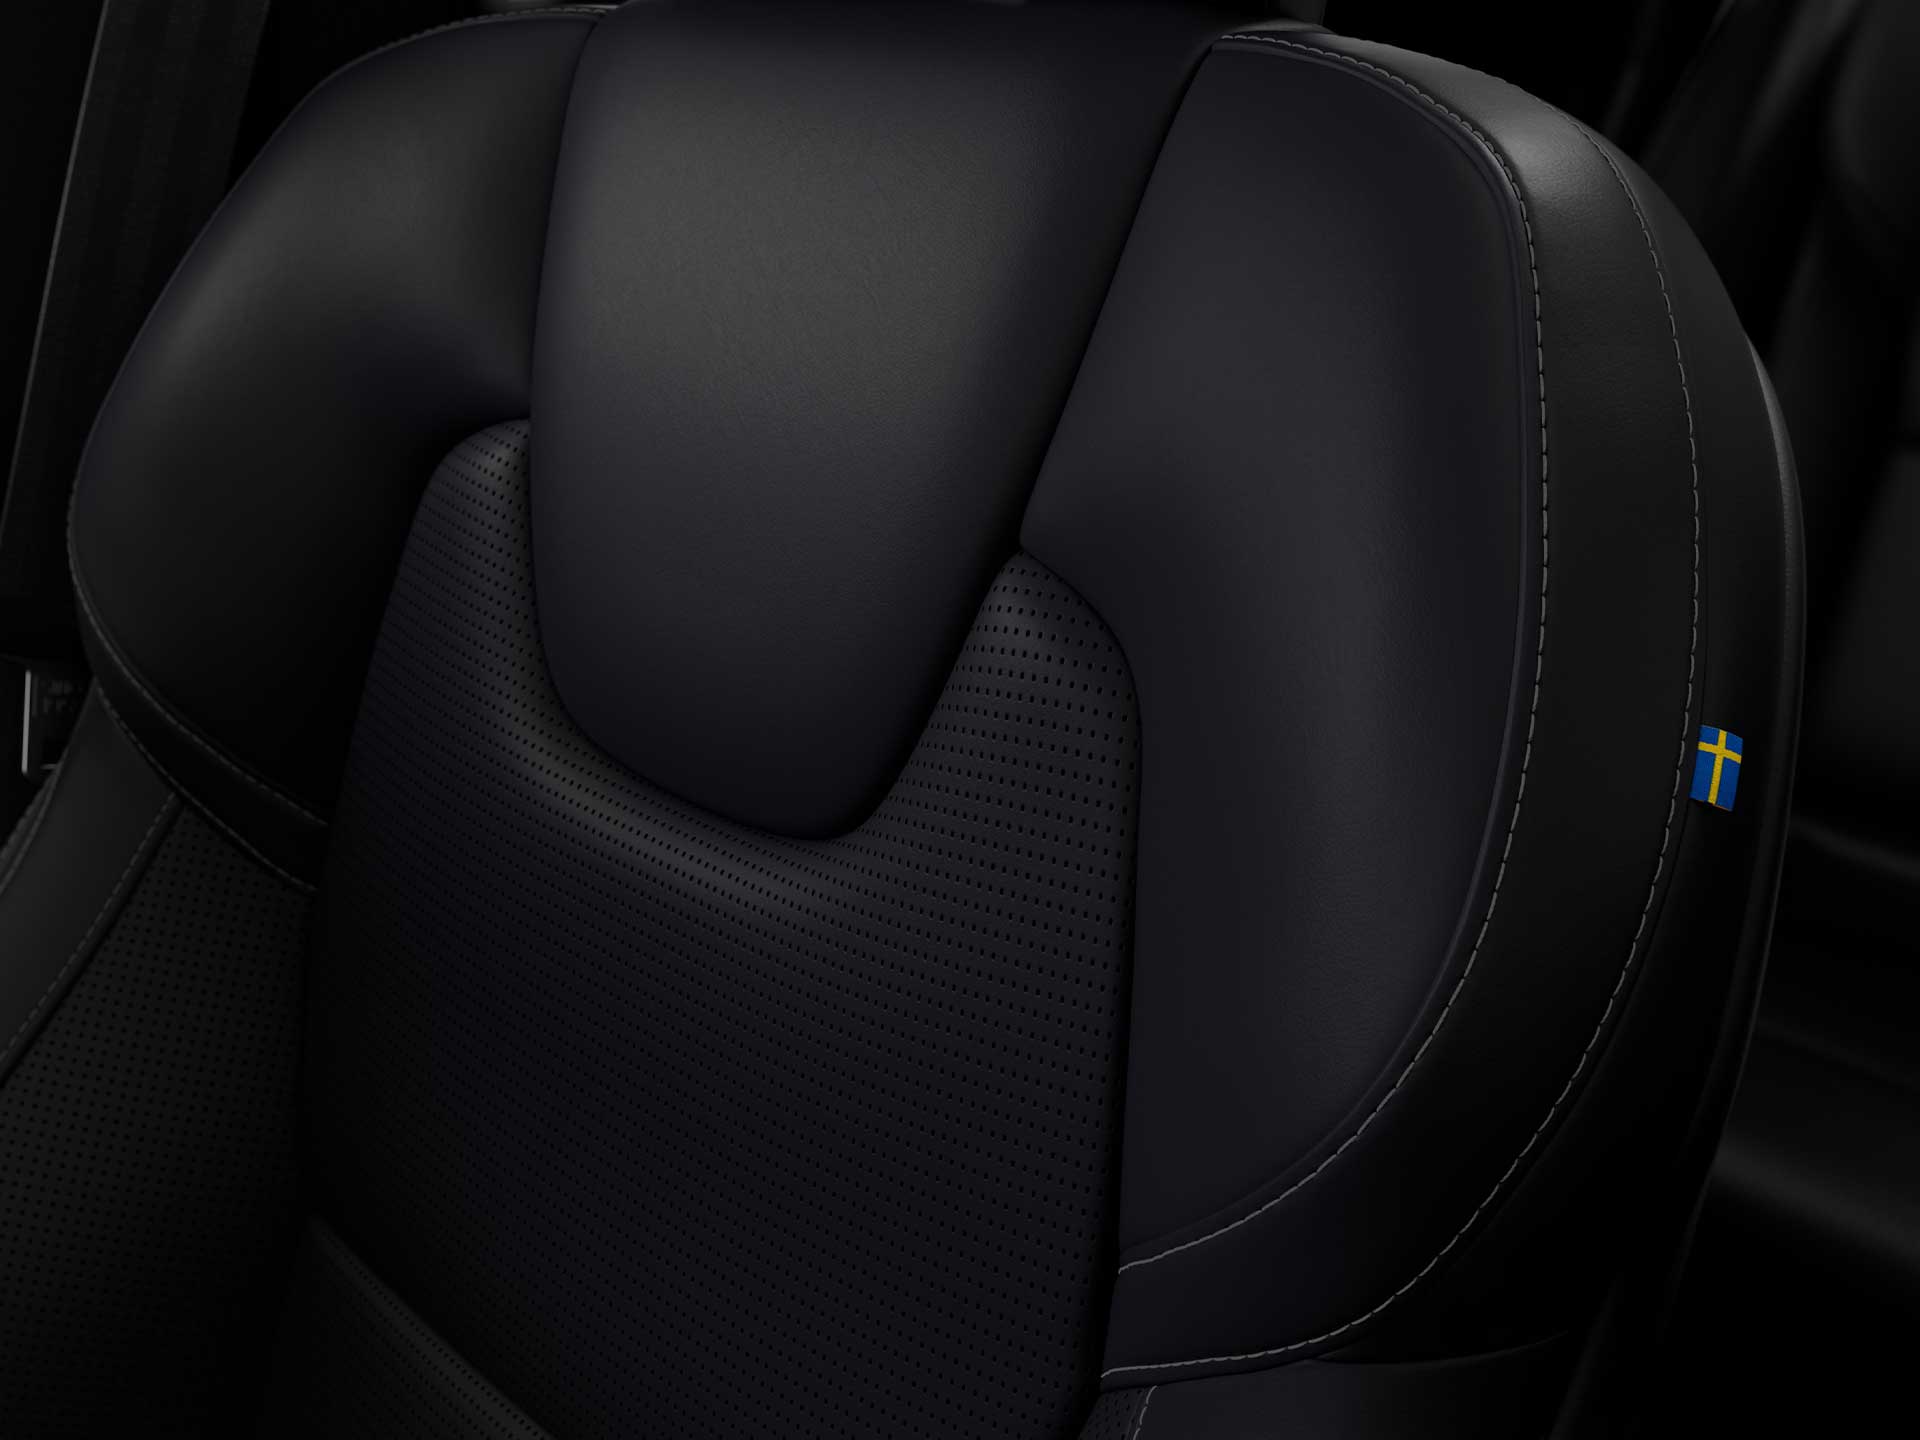 沃尔沃 S90 轿车内 Nappa 真皮座椅。